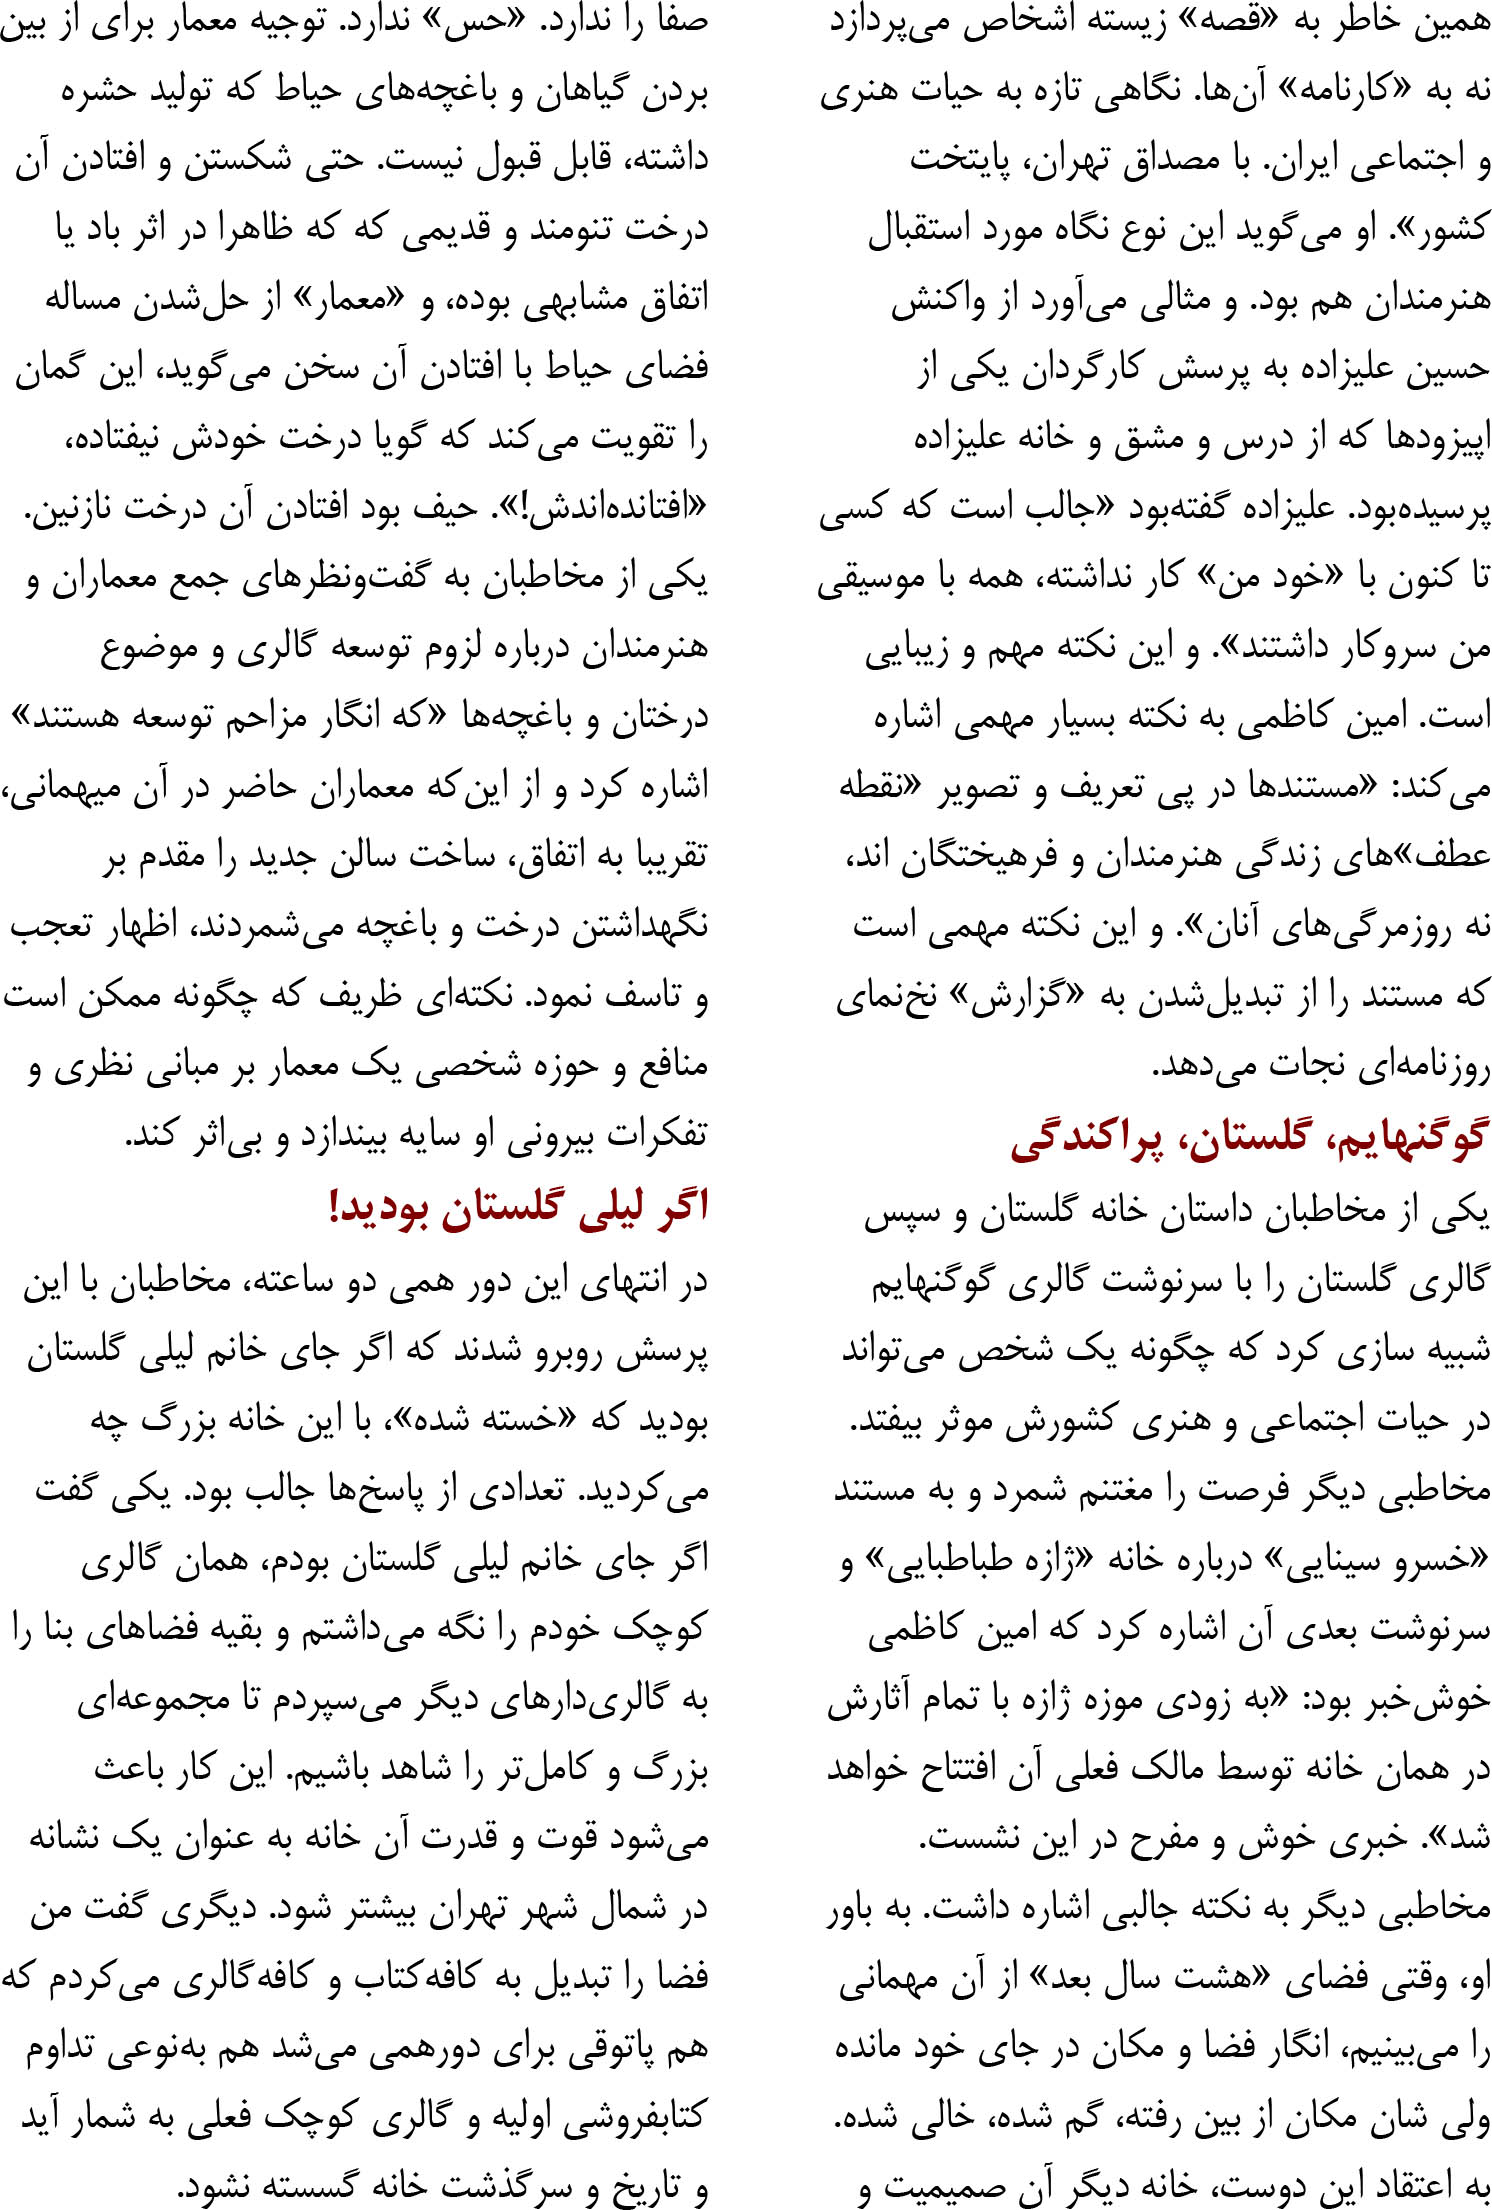 یک شهرهزارقصه, گزارش یک شهرهزارقصه_لیلی گلستان, موسسه فرهنگی هنری اردیبهشت عودلاجان